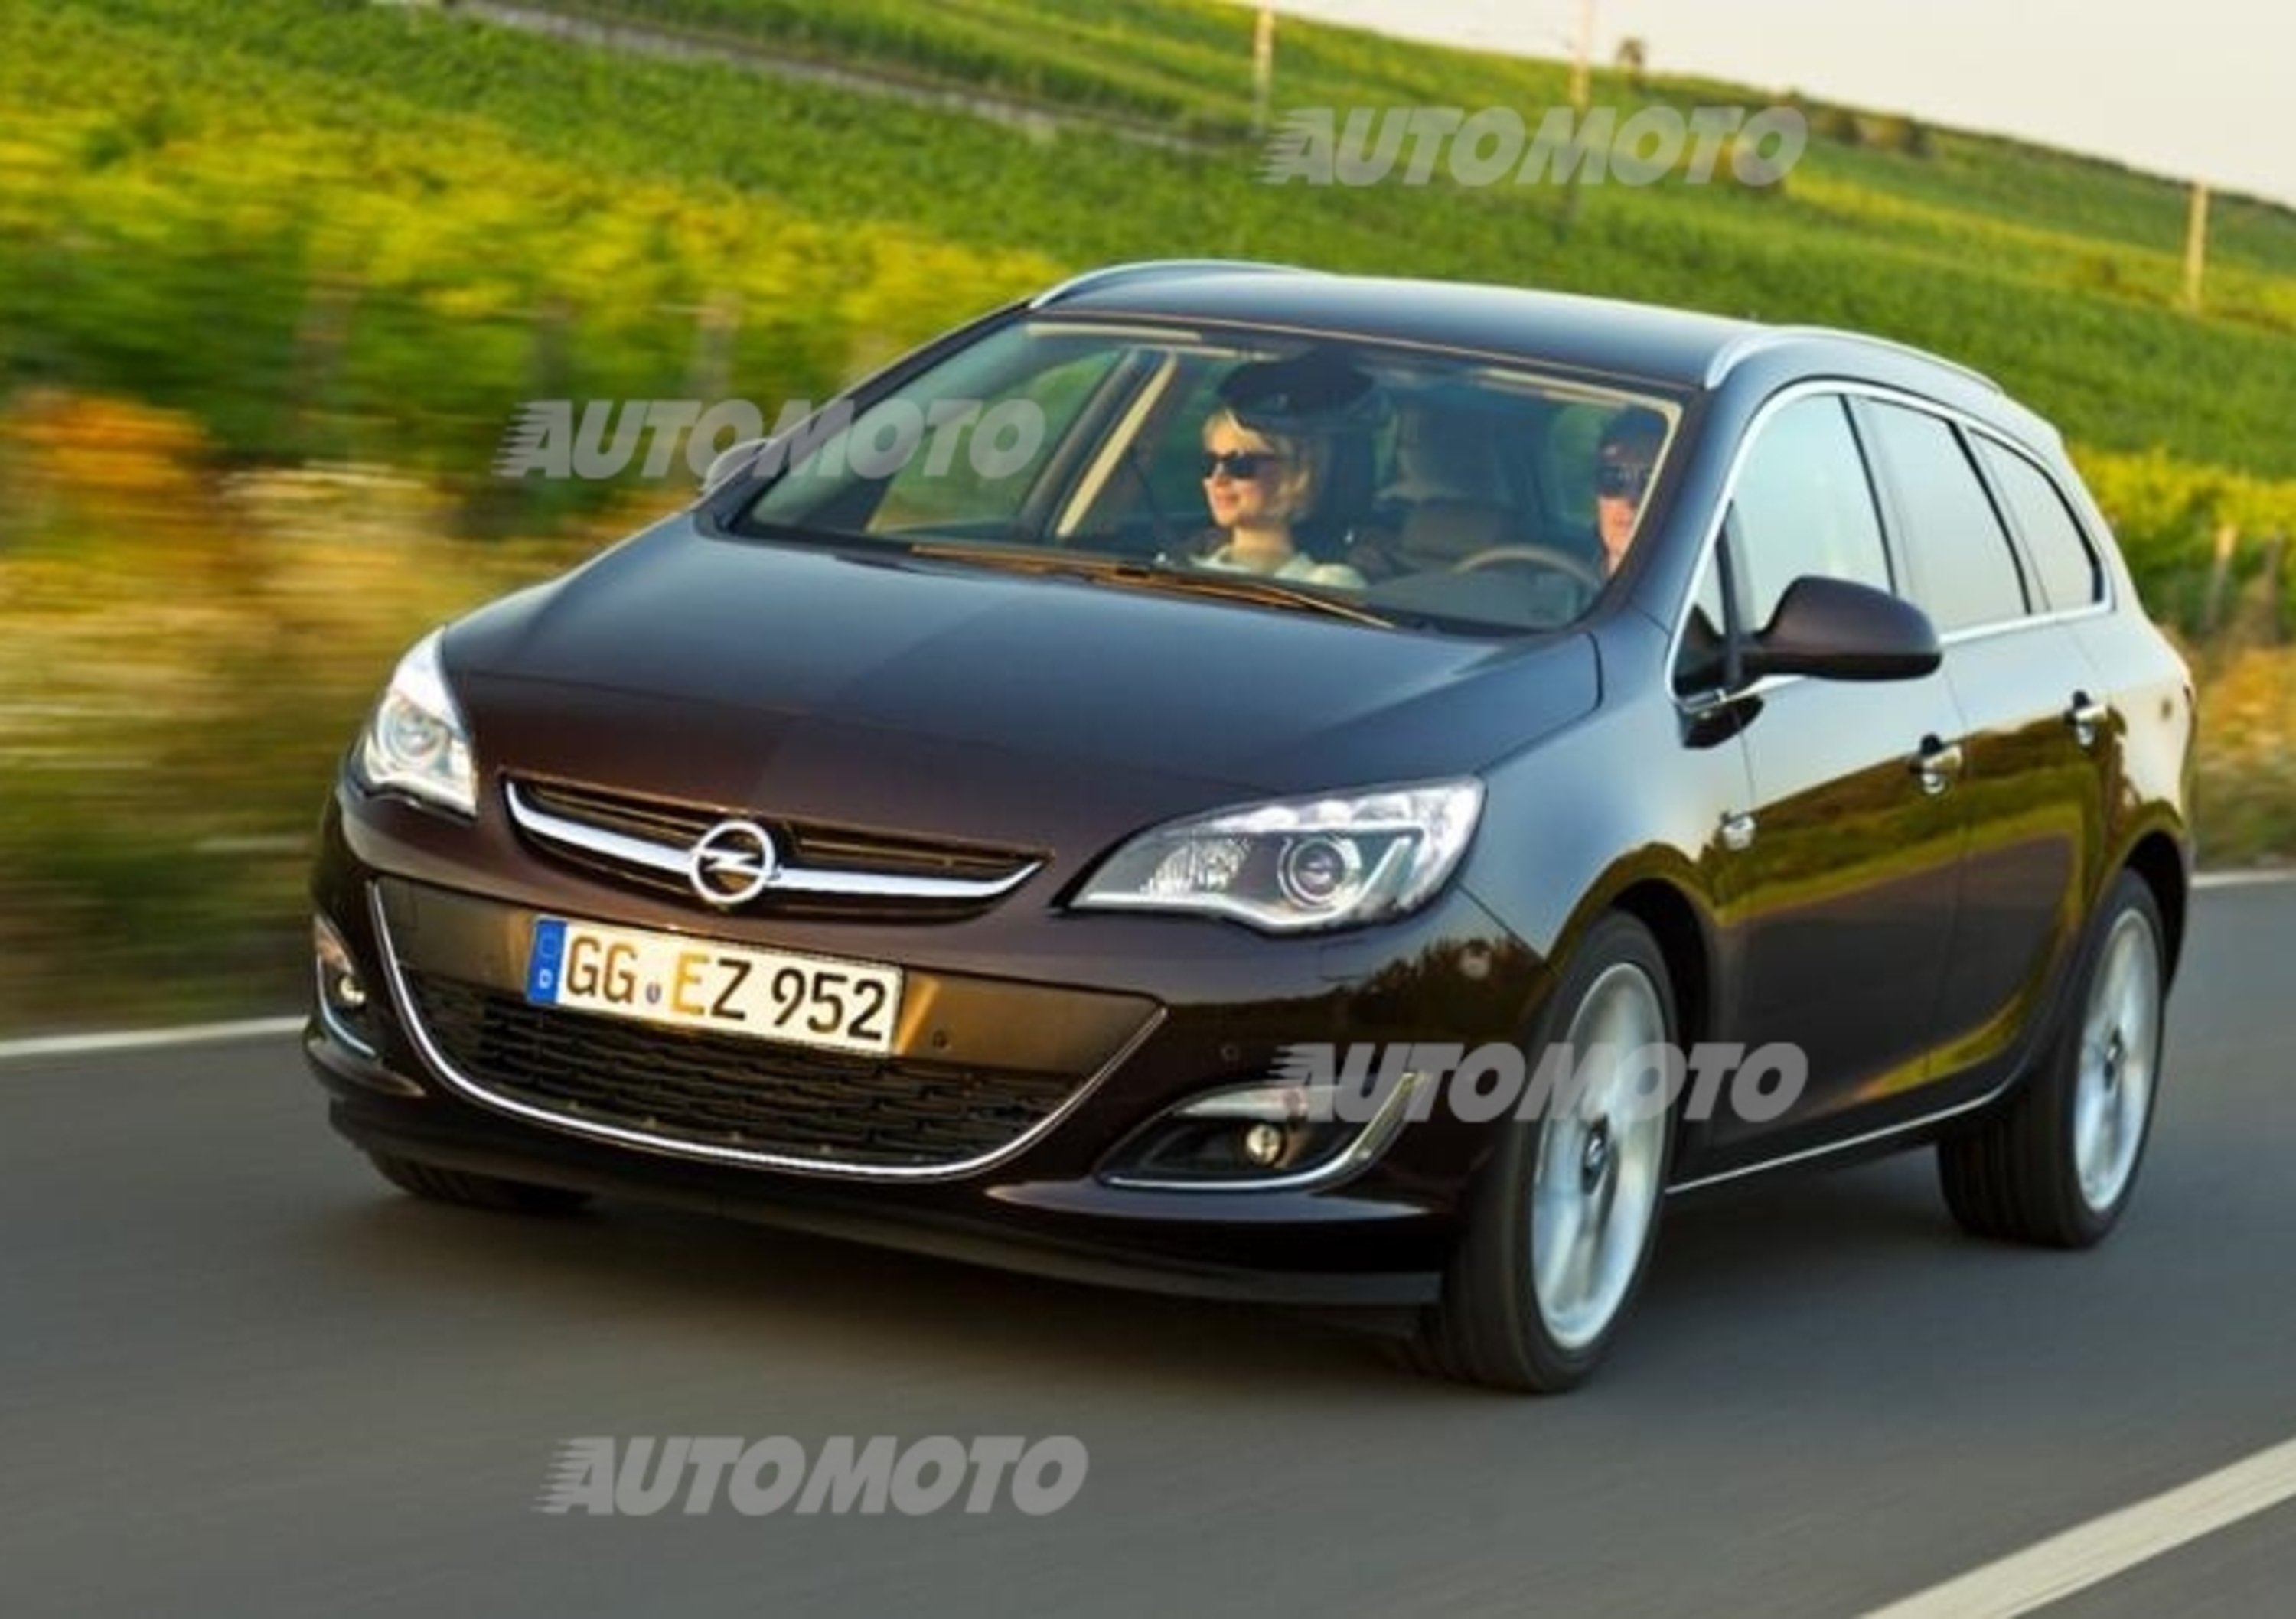 Opel Astra: nel 2014 con il nuovo 1.6 CDTI e un inedito sistema di infotainment